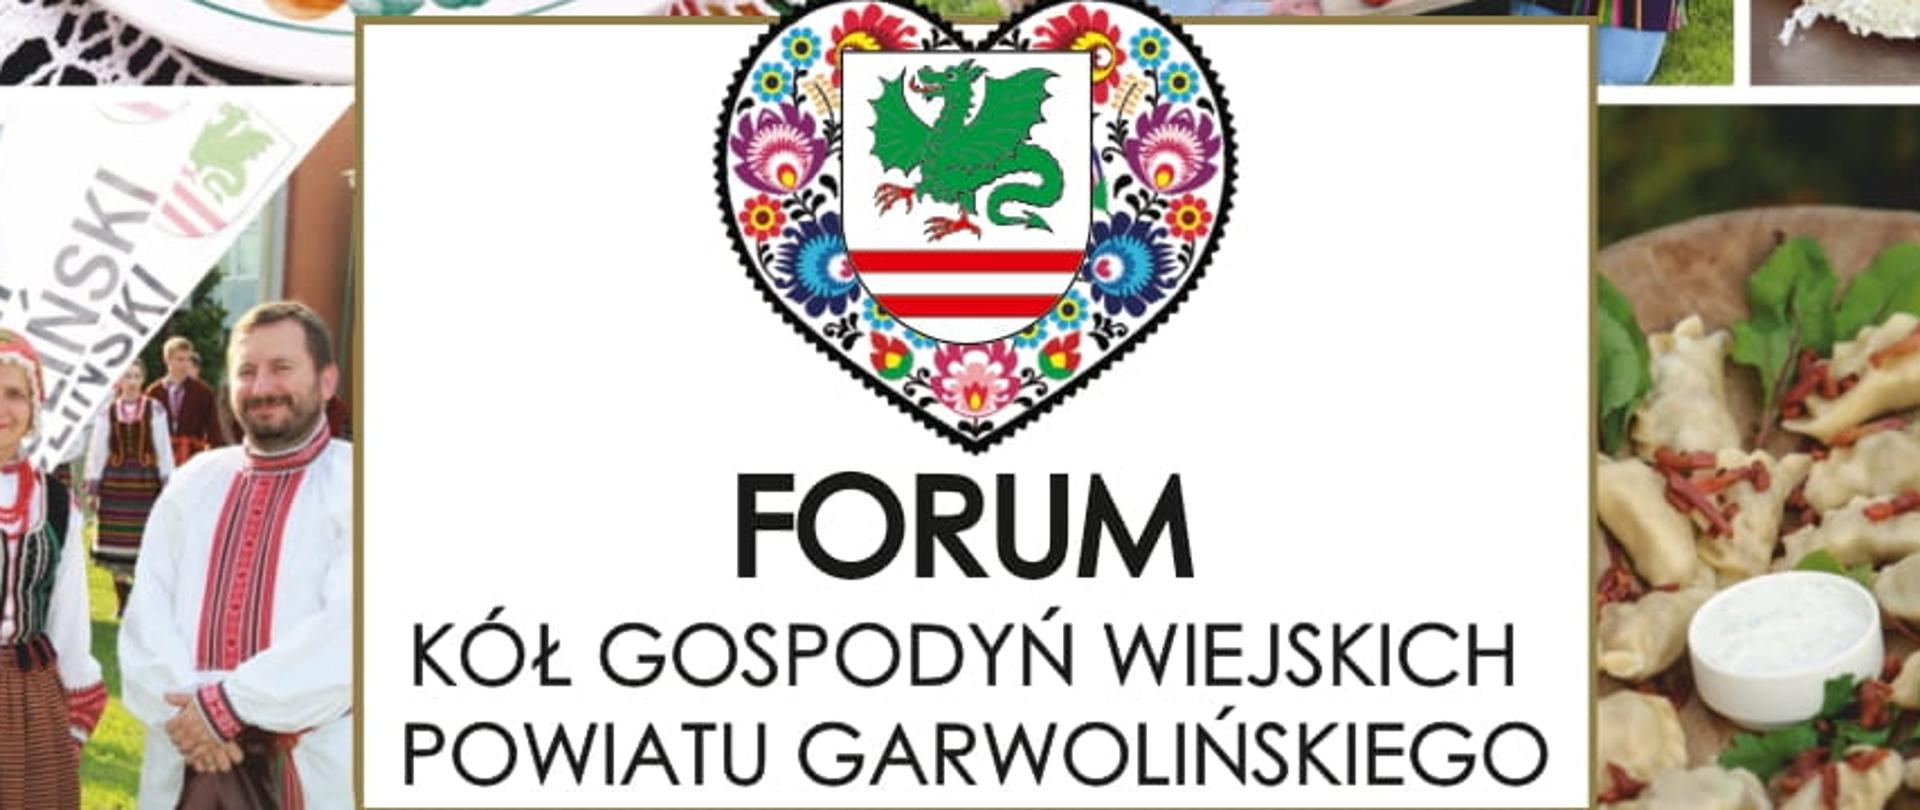 Forum KGW Powiatu Garwolińskiego - informacja